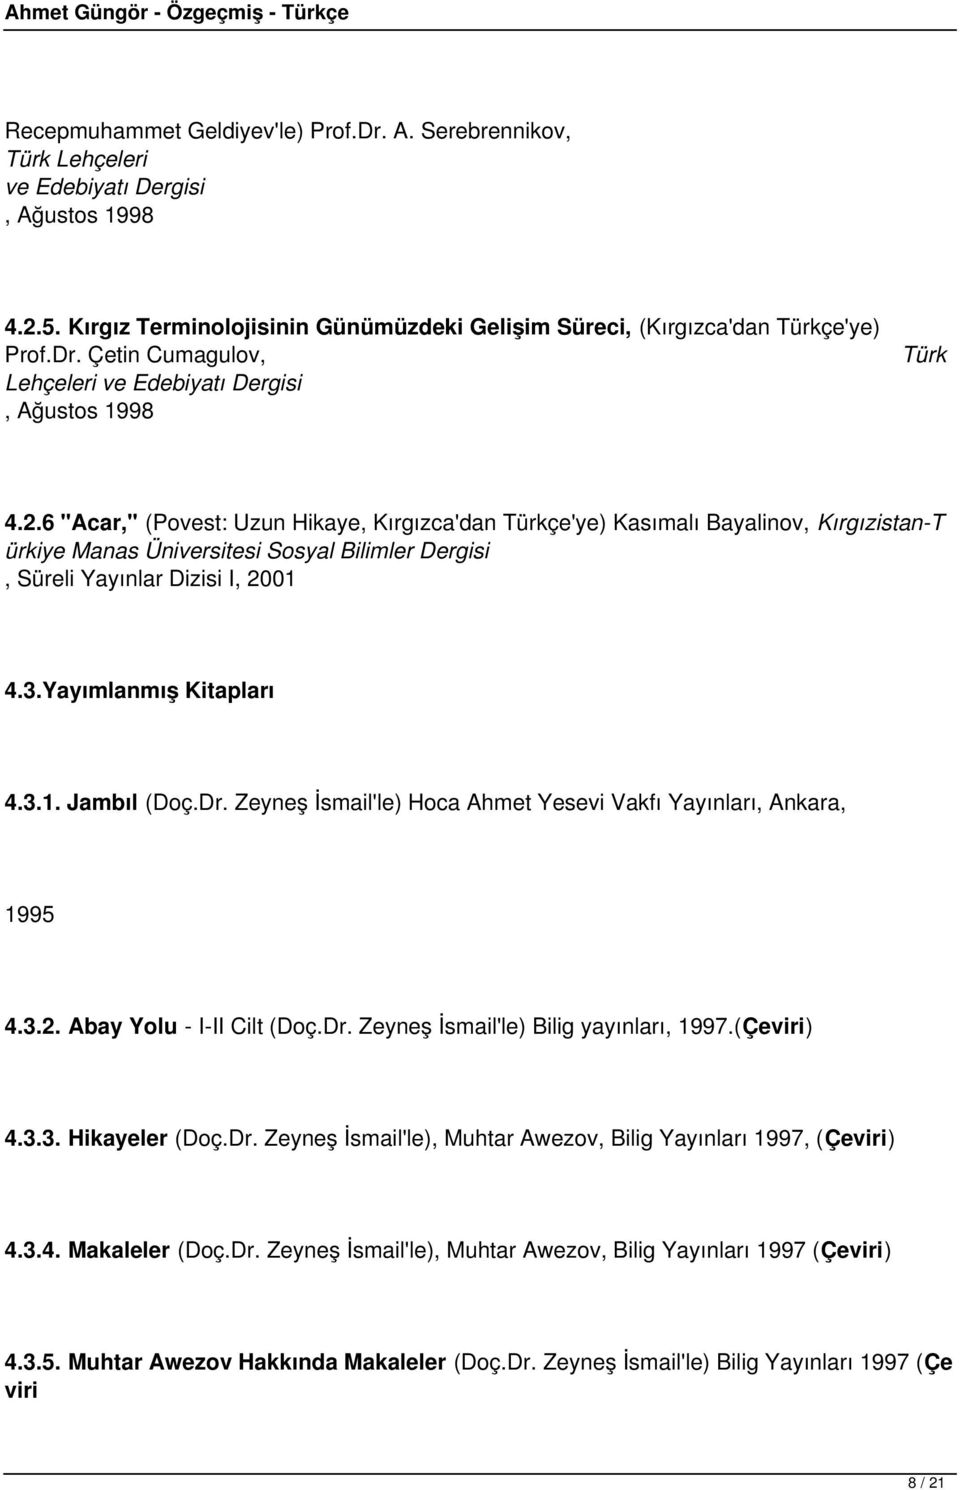 Yayımlanmış Kitapları 4.3.1. Jambıl (Doç.Dr. Zeyneş İsmail'le) Hoca Ahmet Yesevi Vakfı Yayınları, Ankara, 1995 4.3.2. Abay Yolu - I-II Cilt (Doç.Dr. Zeyneş İsmail'le) Bilig yayınları, 1997.(Çeviri) 4.